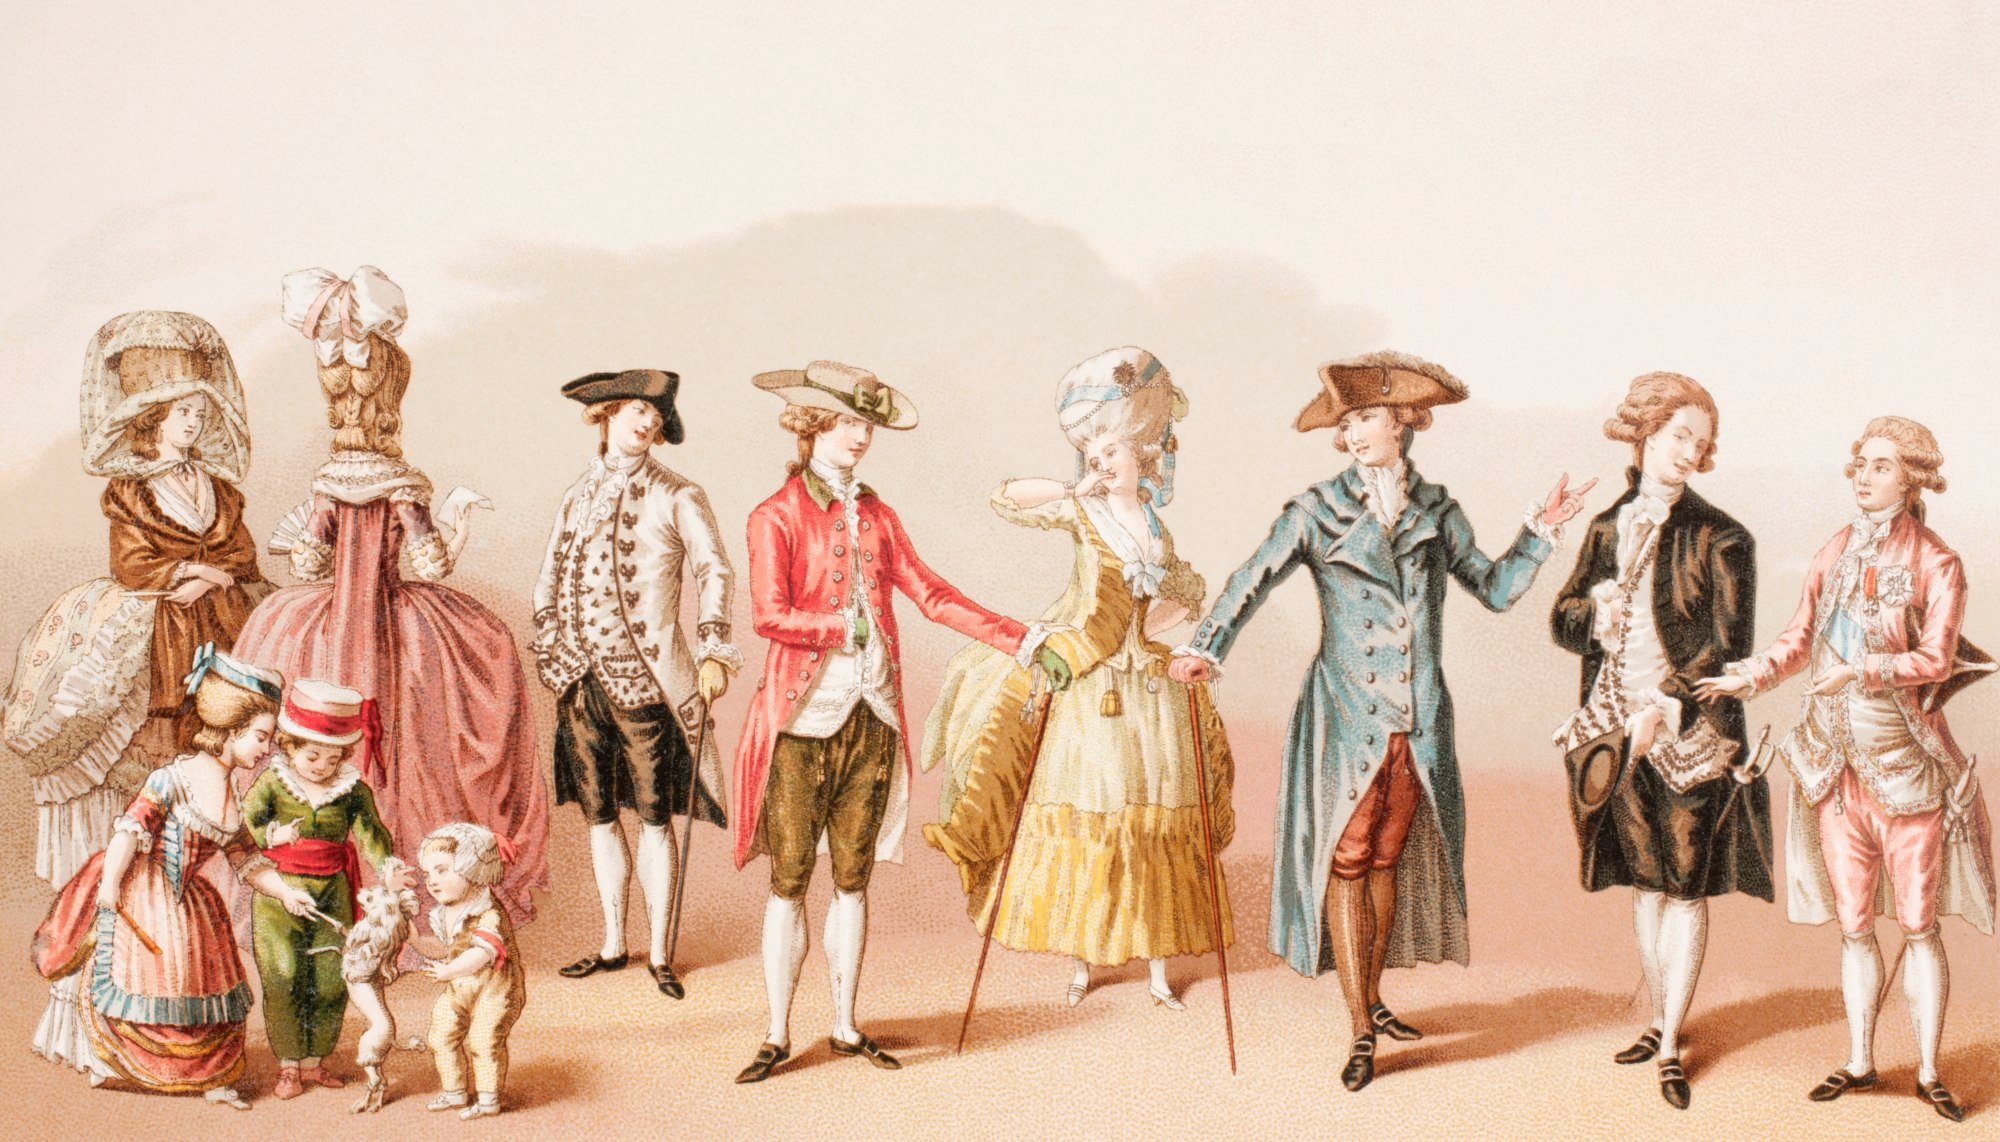 A century of being around. Дворянство Франция одежда 18 век. Дворянство во Франции 18 век. Одежда французских дворян 18 века. Одежда дворянина Франция 18 век.